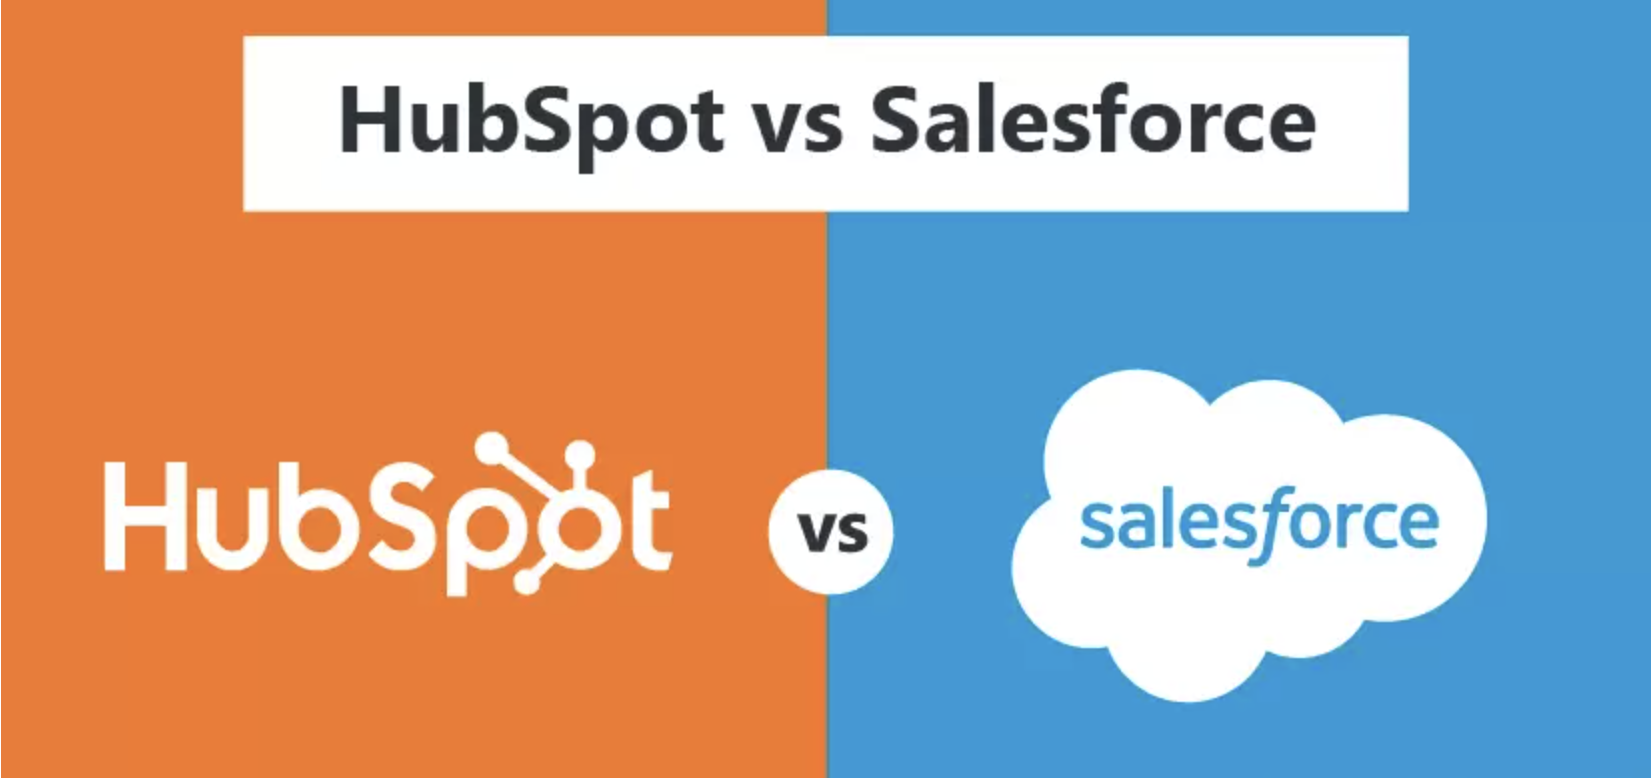 HubSpot CRM vs Salesforce